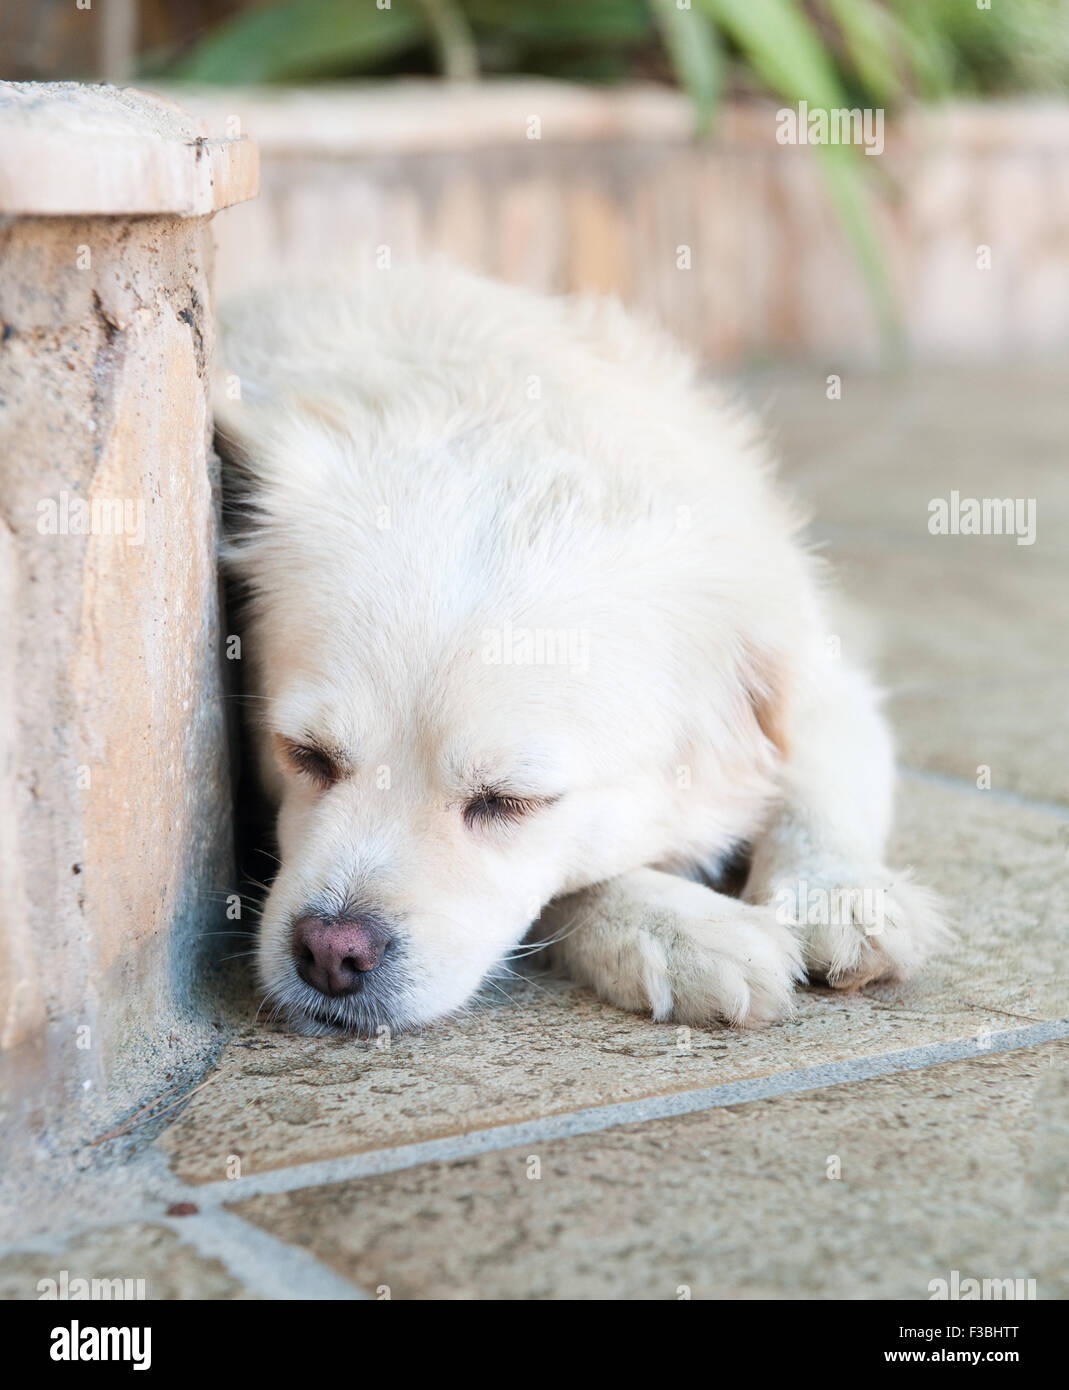 The dog sleeps Stock Photo